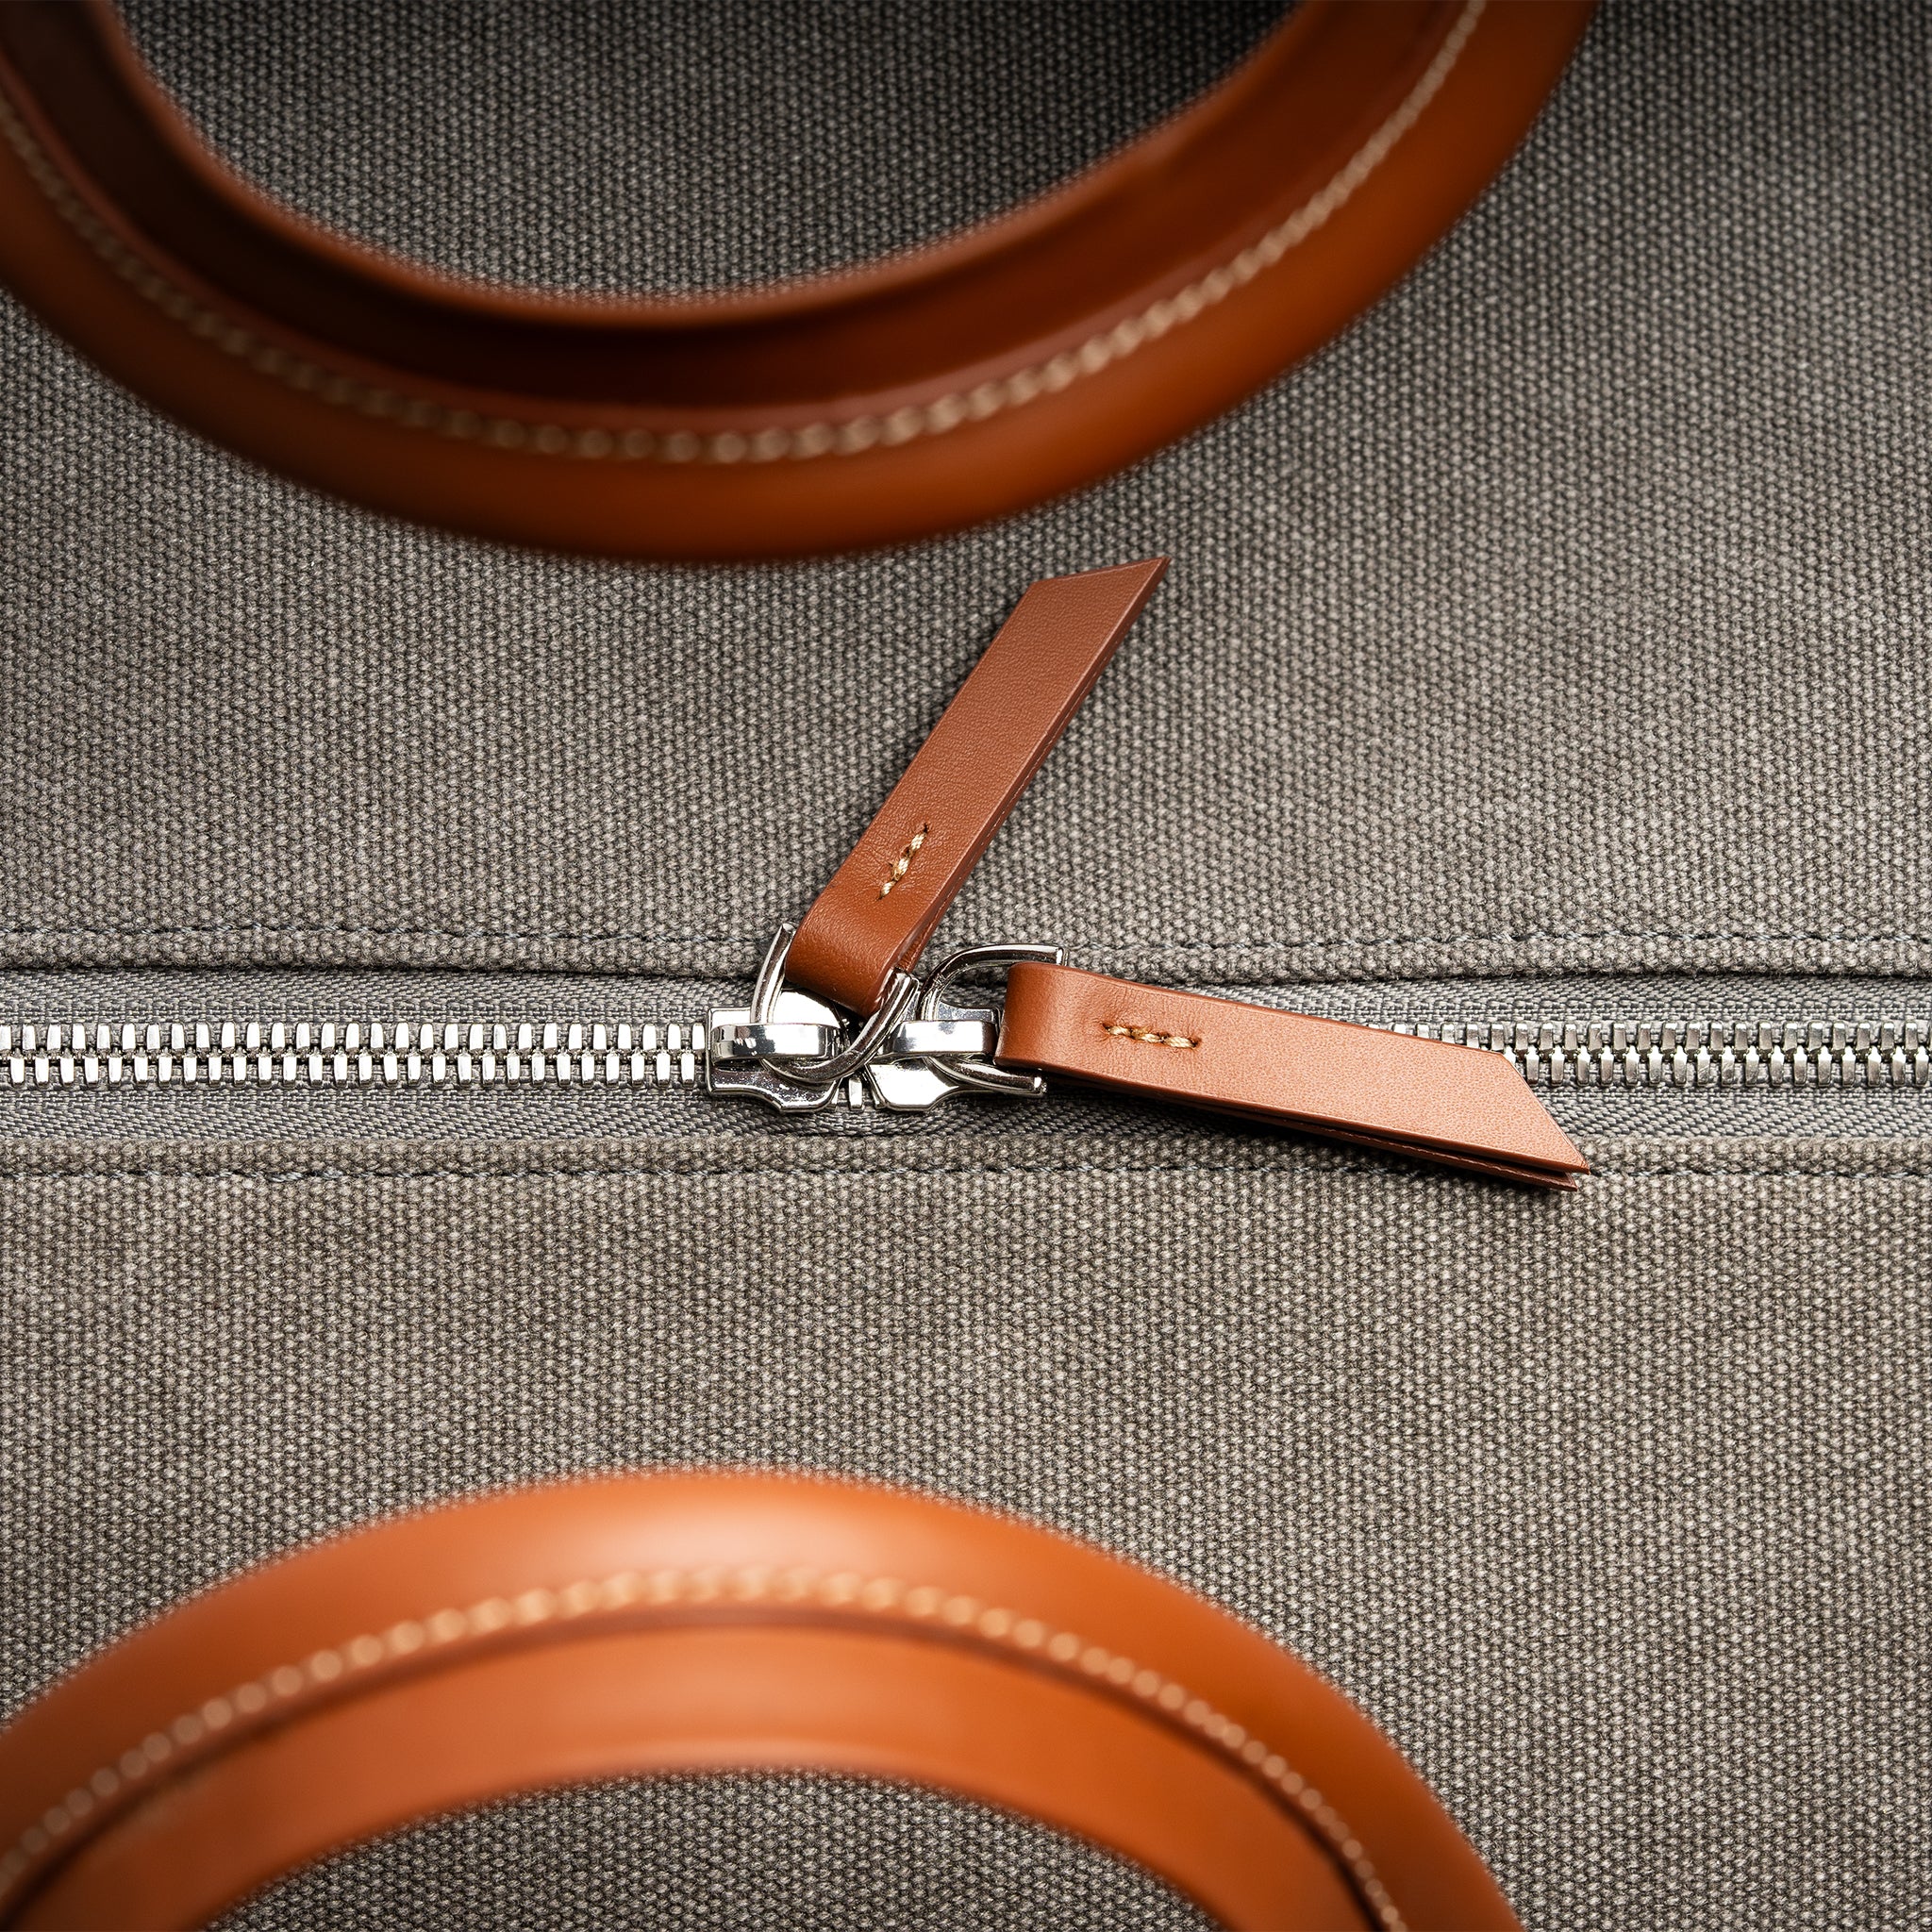 Les fermetures à glissière de notre sac de voyage sont équipées de zip Excella de la marque YKK. Des zips en métal équipés de double curseurs.